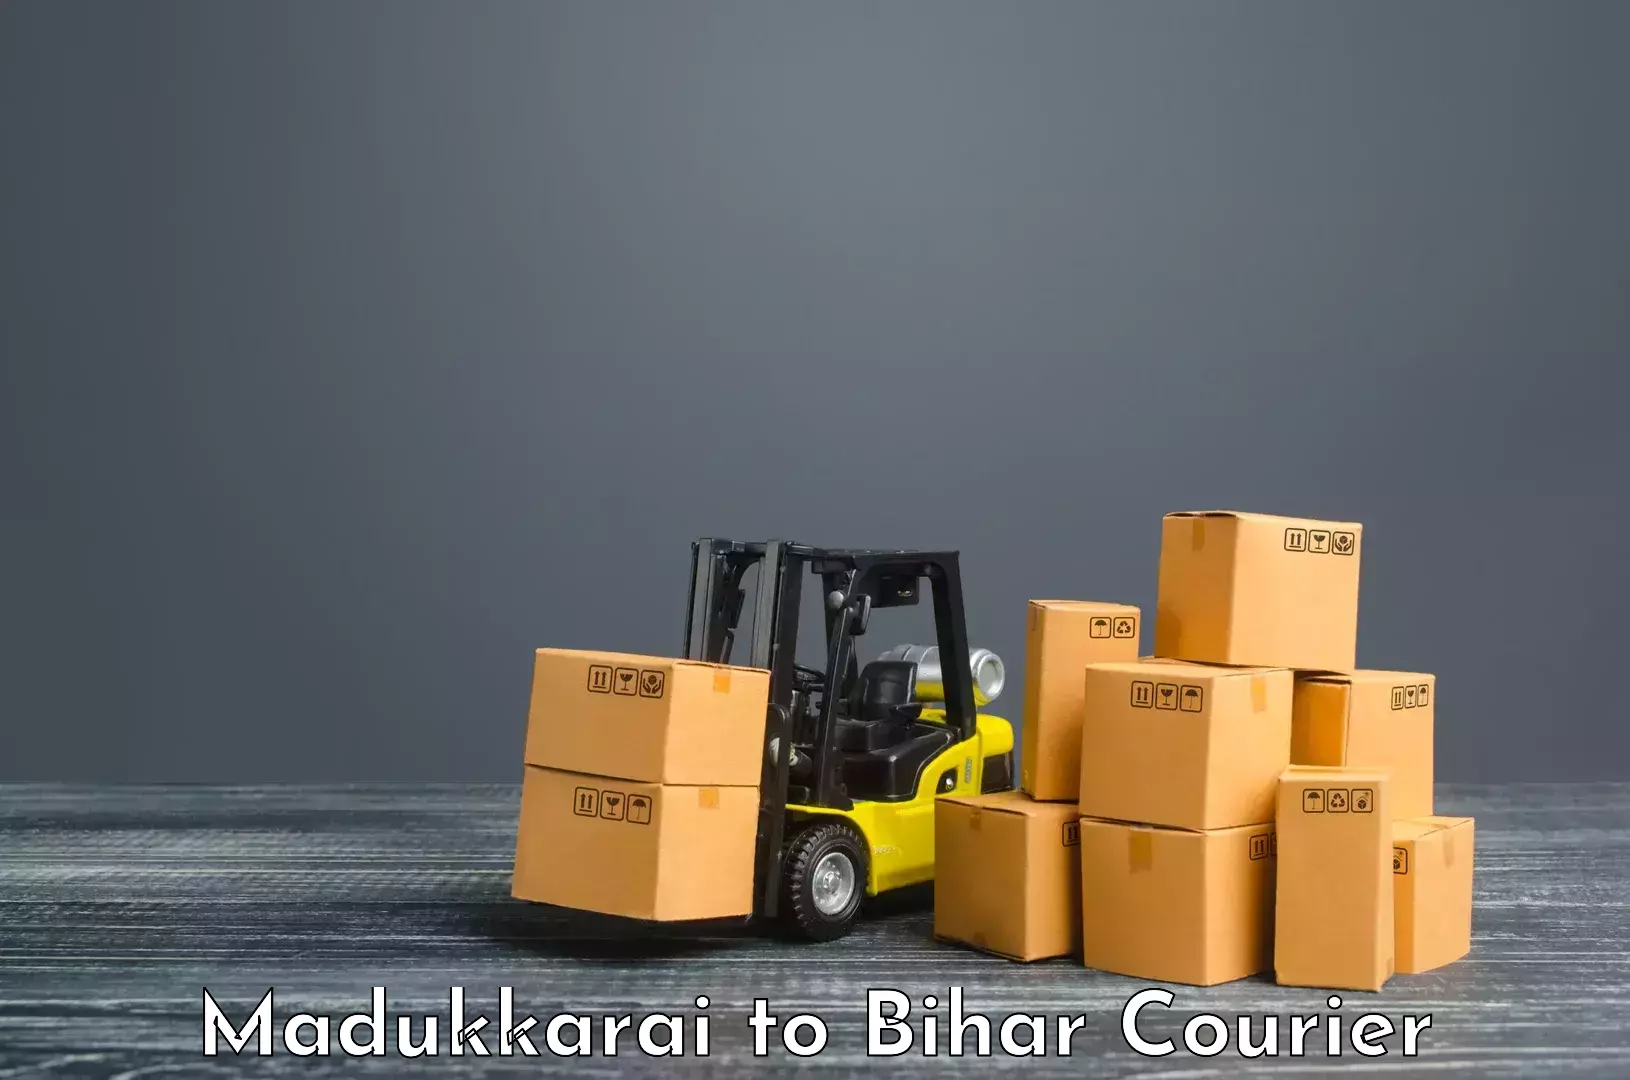 High-capacity parcel service Madukkarai to Jehanabad